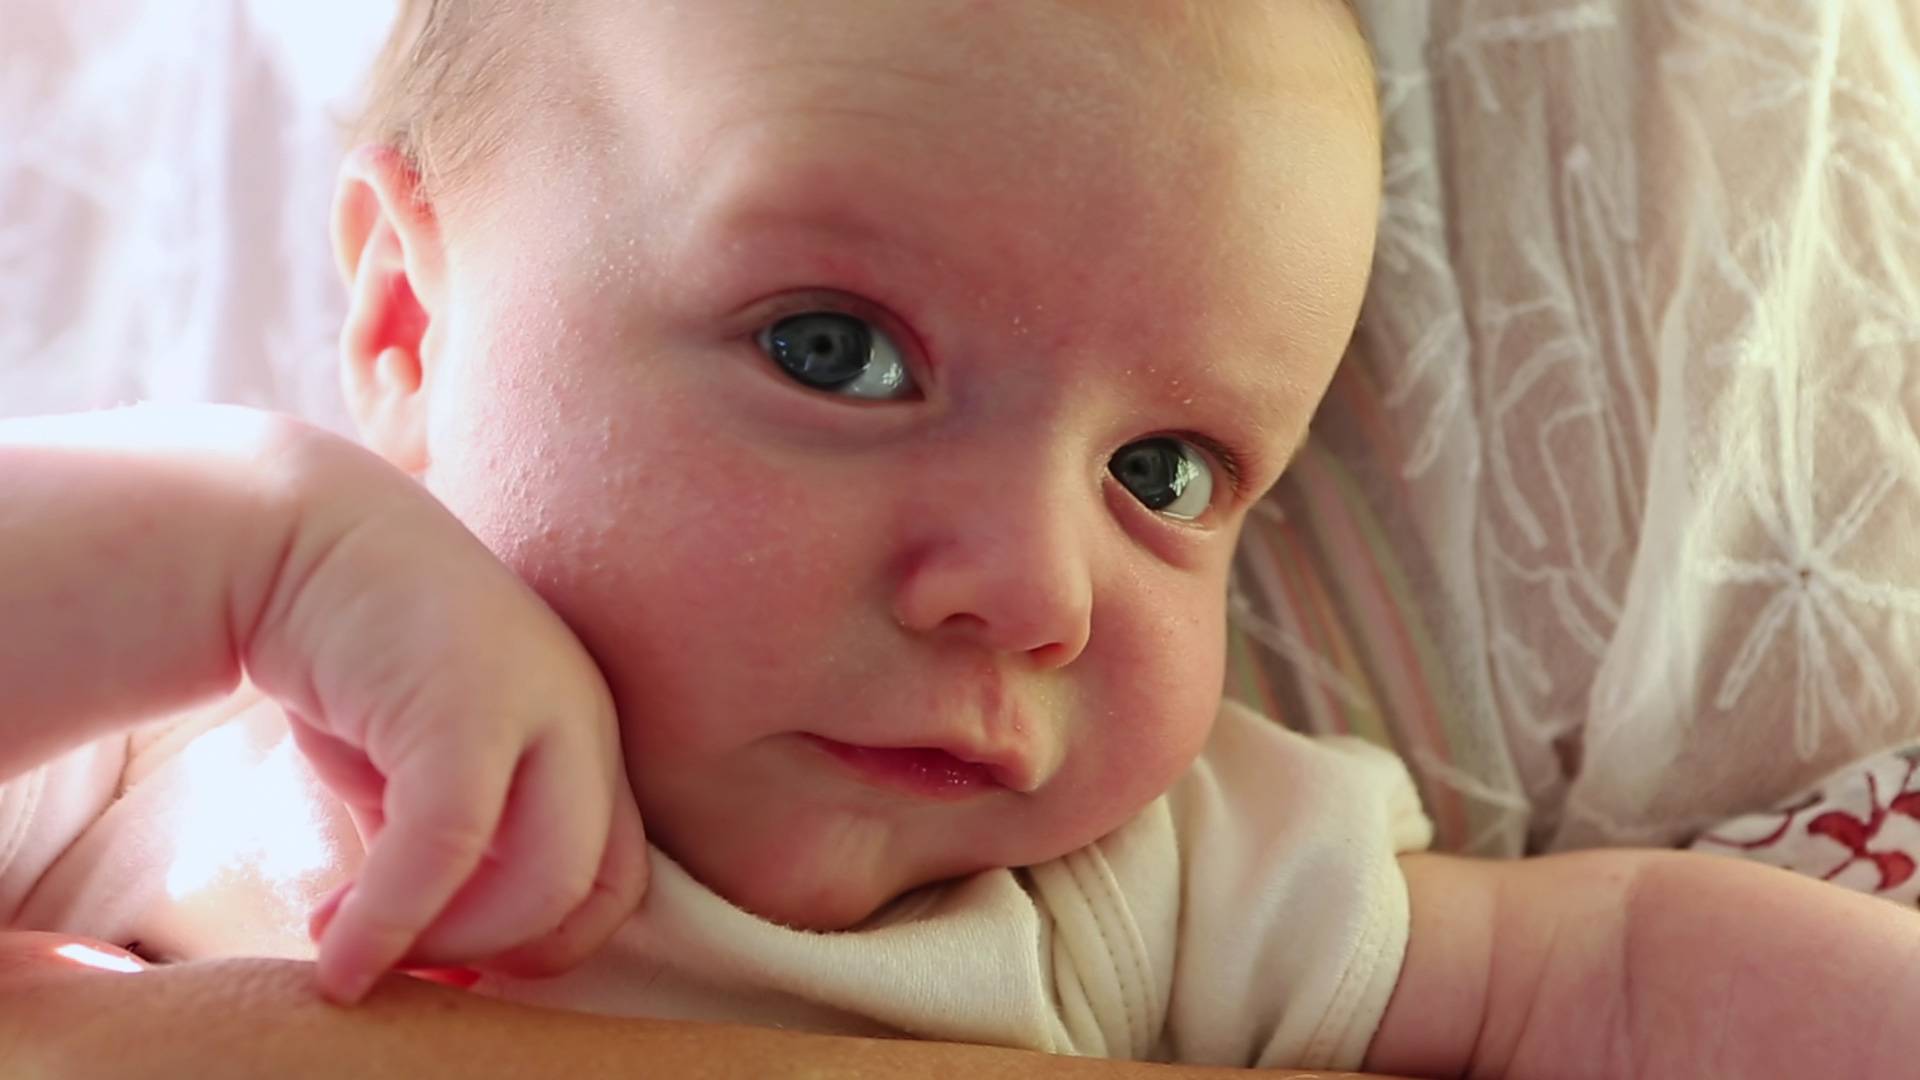 Почему у ребенка трясется нижняя губа | главный перинатальный - всё про беременность и роды